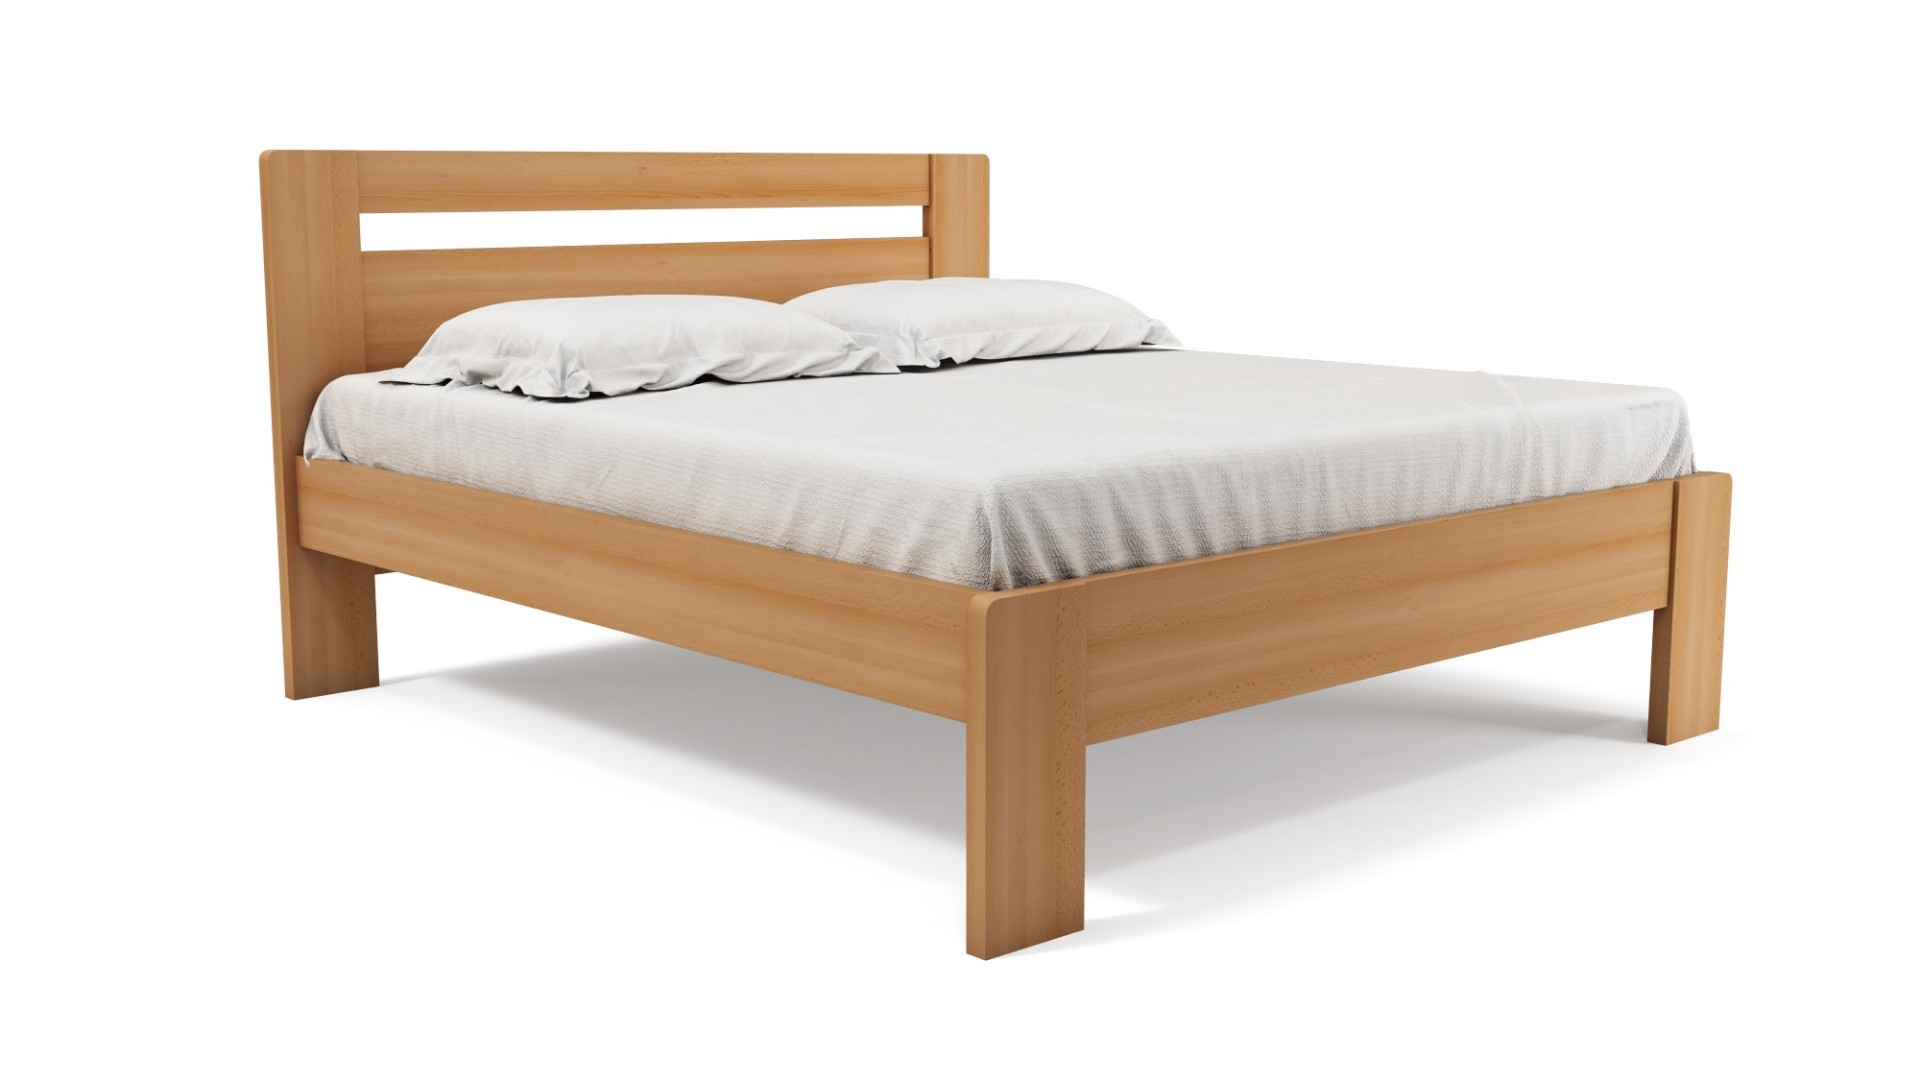 TEXPOL REBEKA - luxusní masivní buková postel 160 x 200 cm, buk masiv